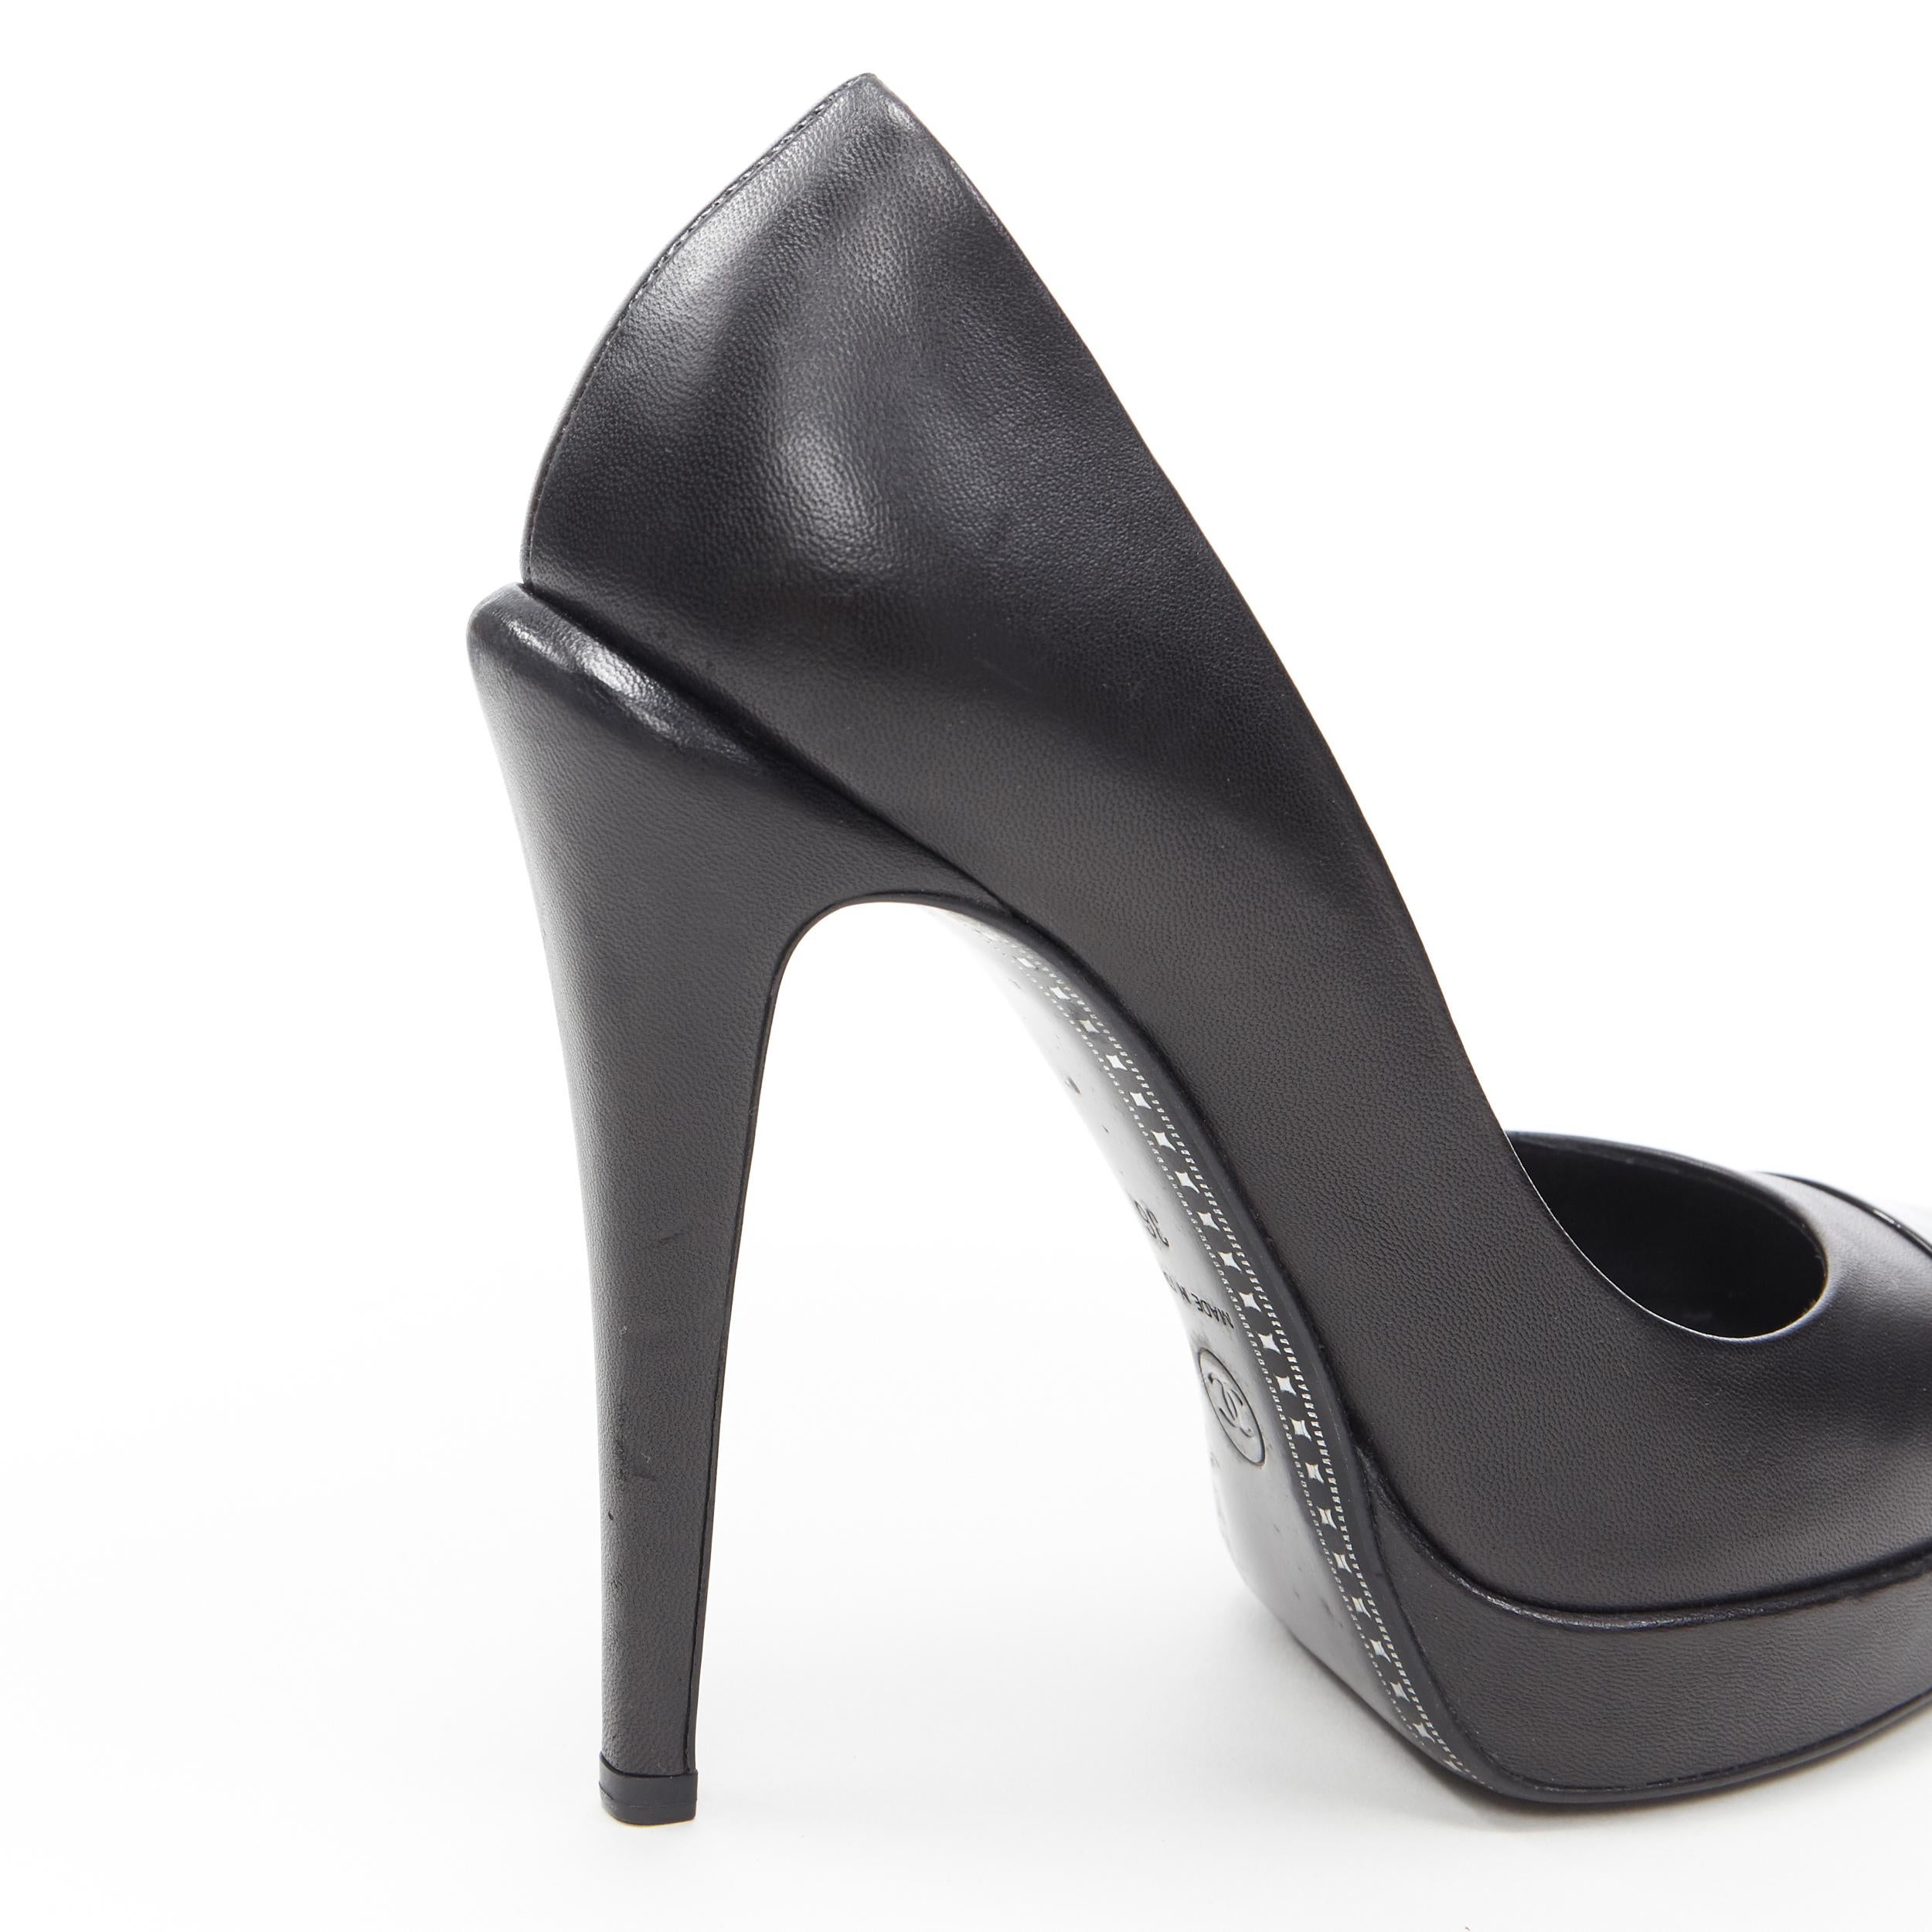 CHANEL black patent toe cap sculpted heel CC logo leather platform pump EU36 5